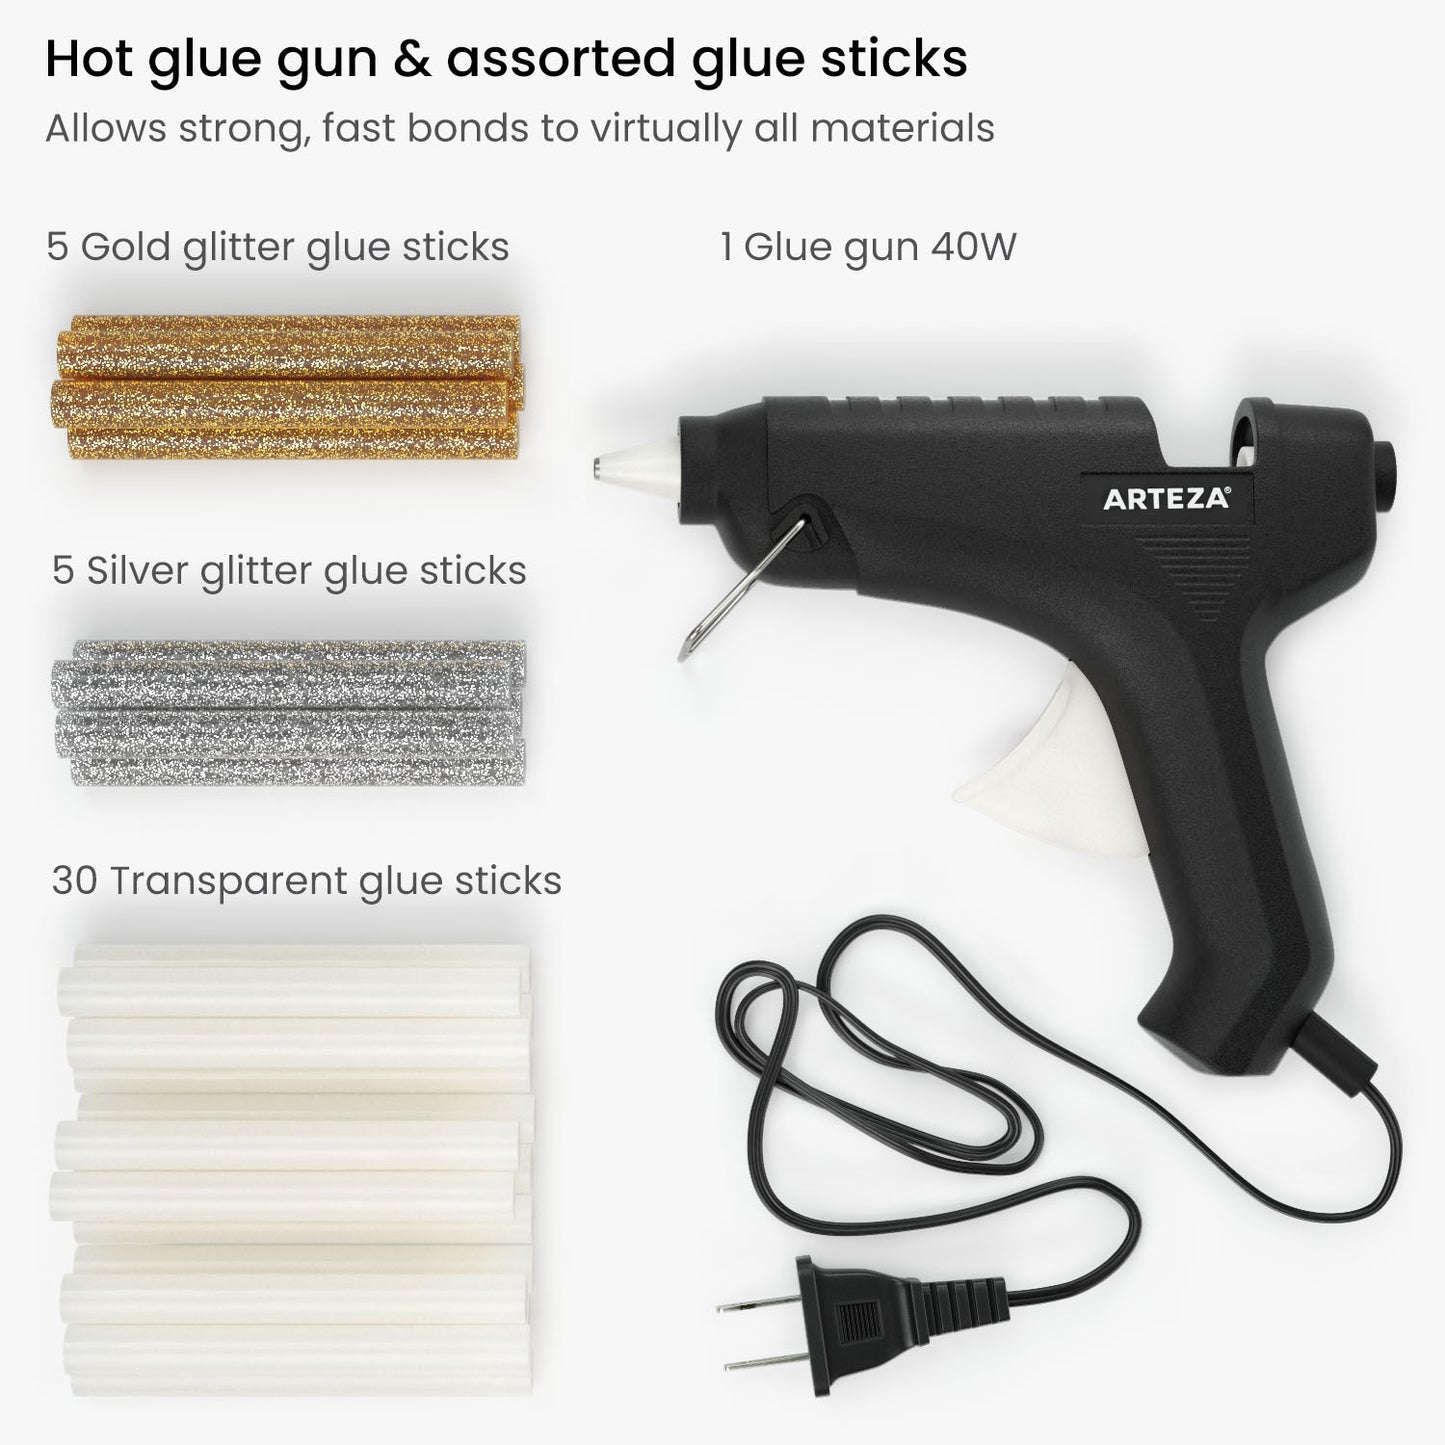 Mini Hot Glue Gun & Assorted Glue Sticks Kit